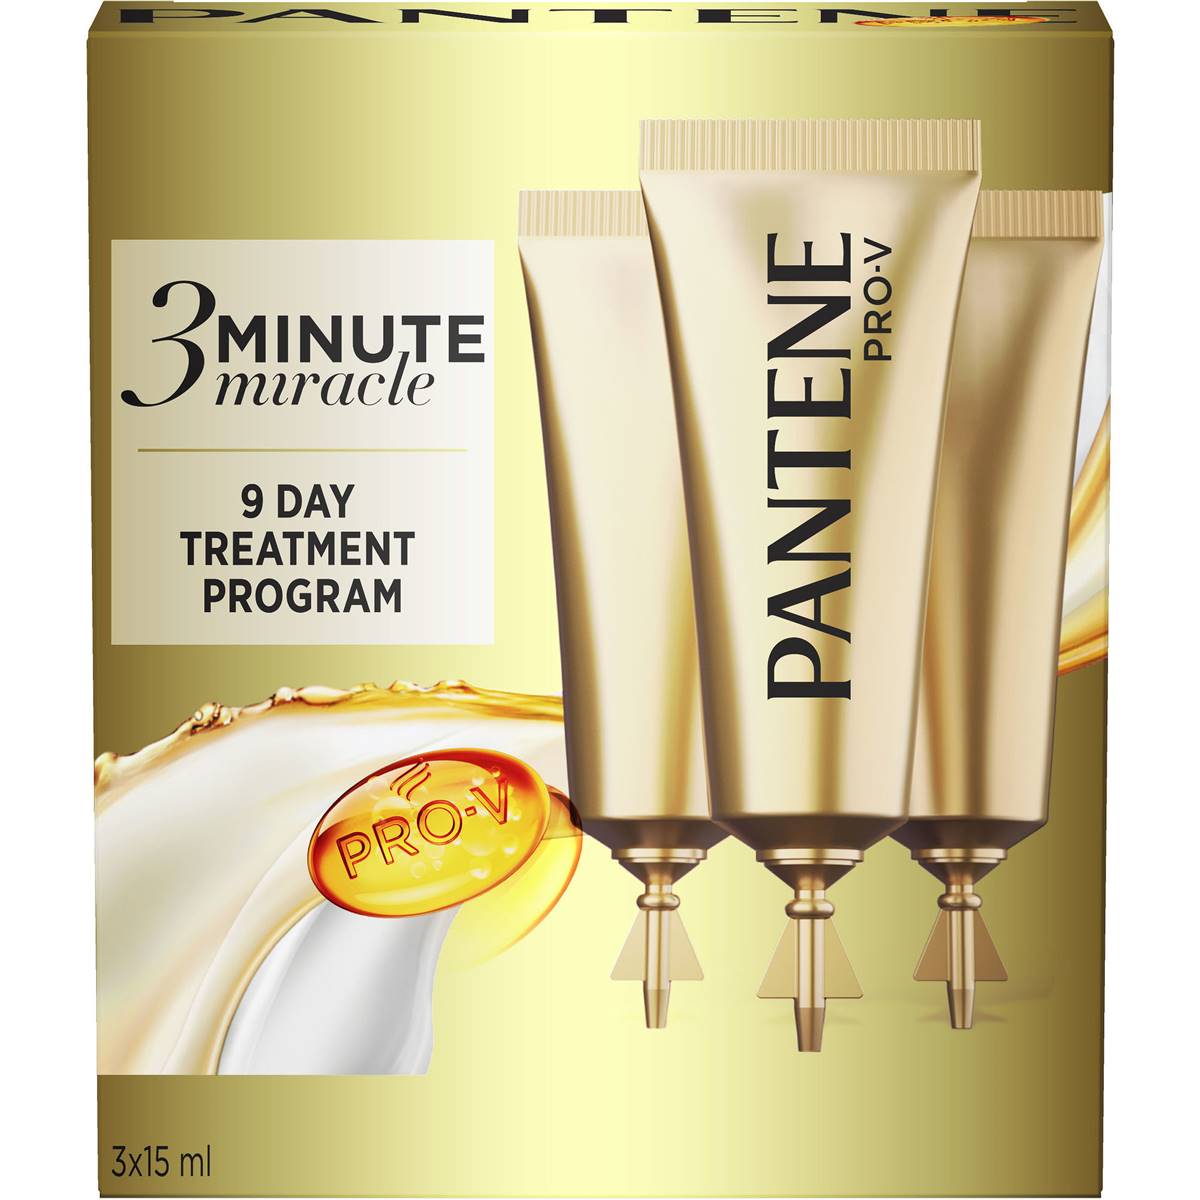 Pantene Pro-v 3 Minute Miracle Intensive Treatment Program